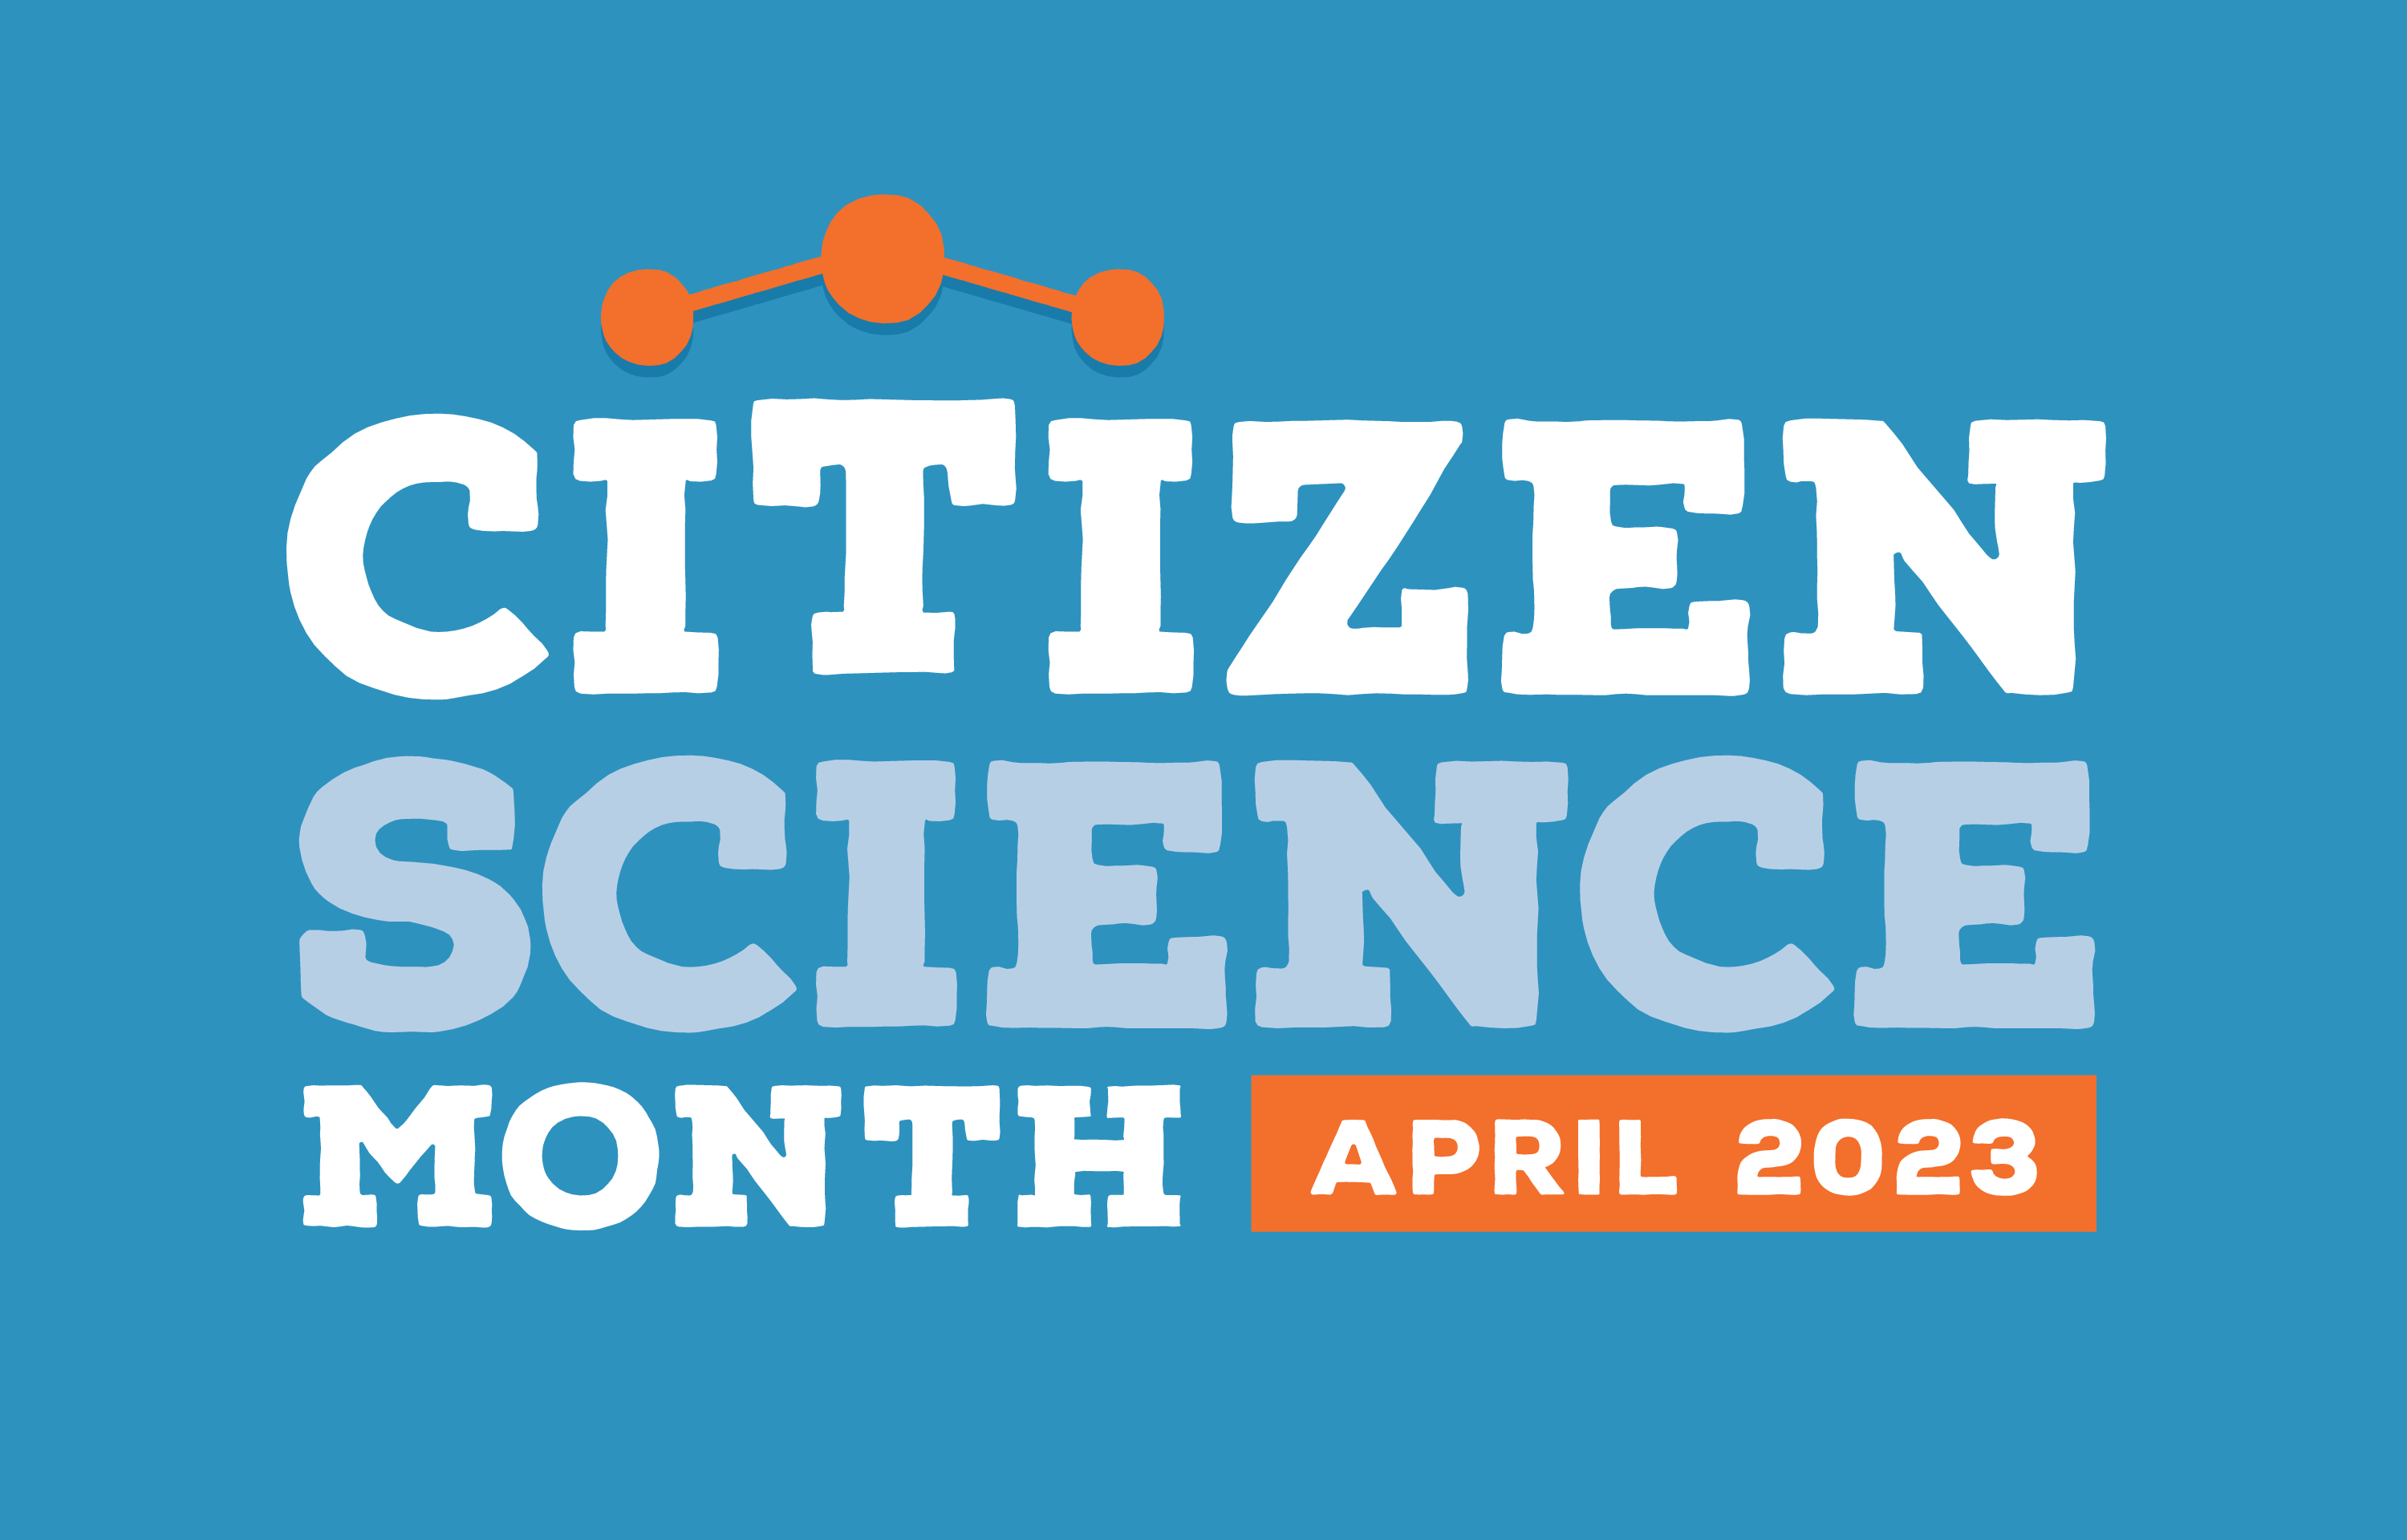 Citizen Science Month, April 2023